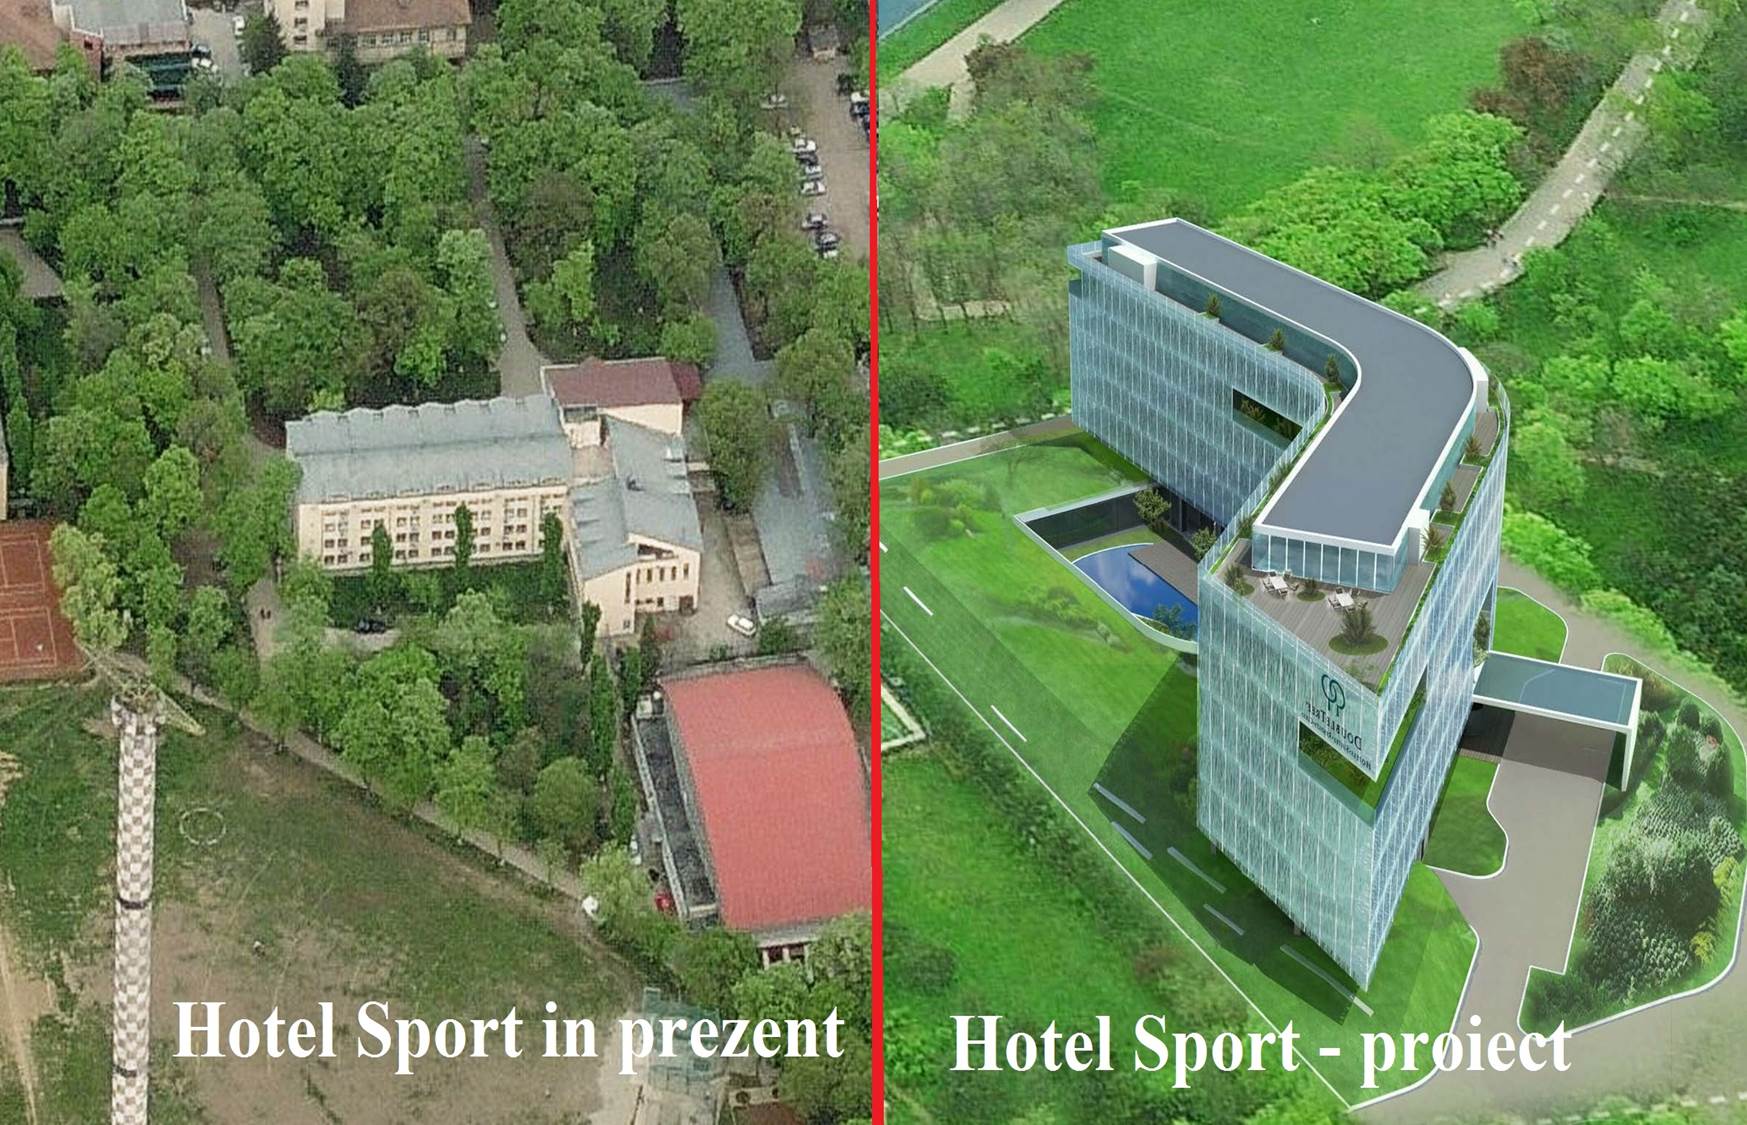 Primarul general vrea sa ceara Guvernului si hotelul din cadrul complexului sportiv Lia Manoliu